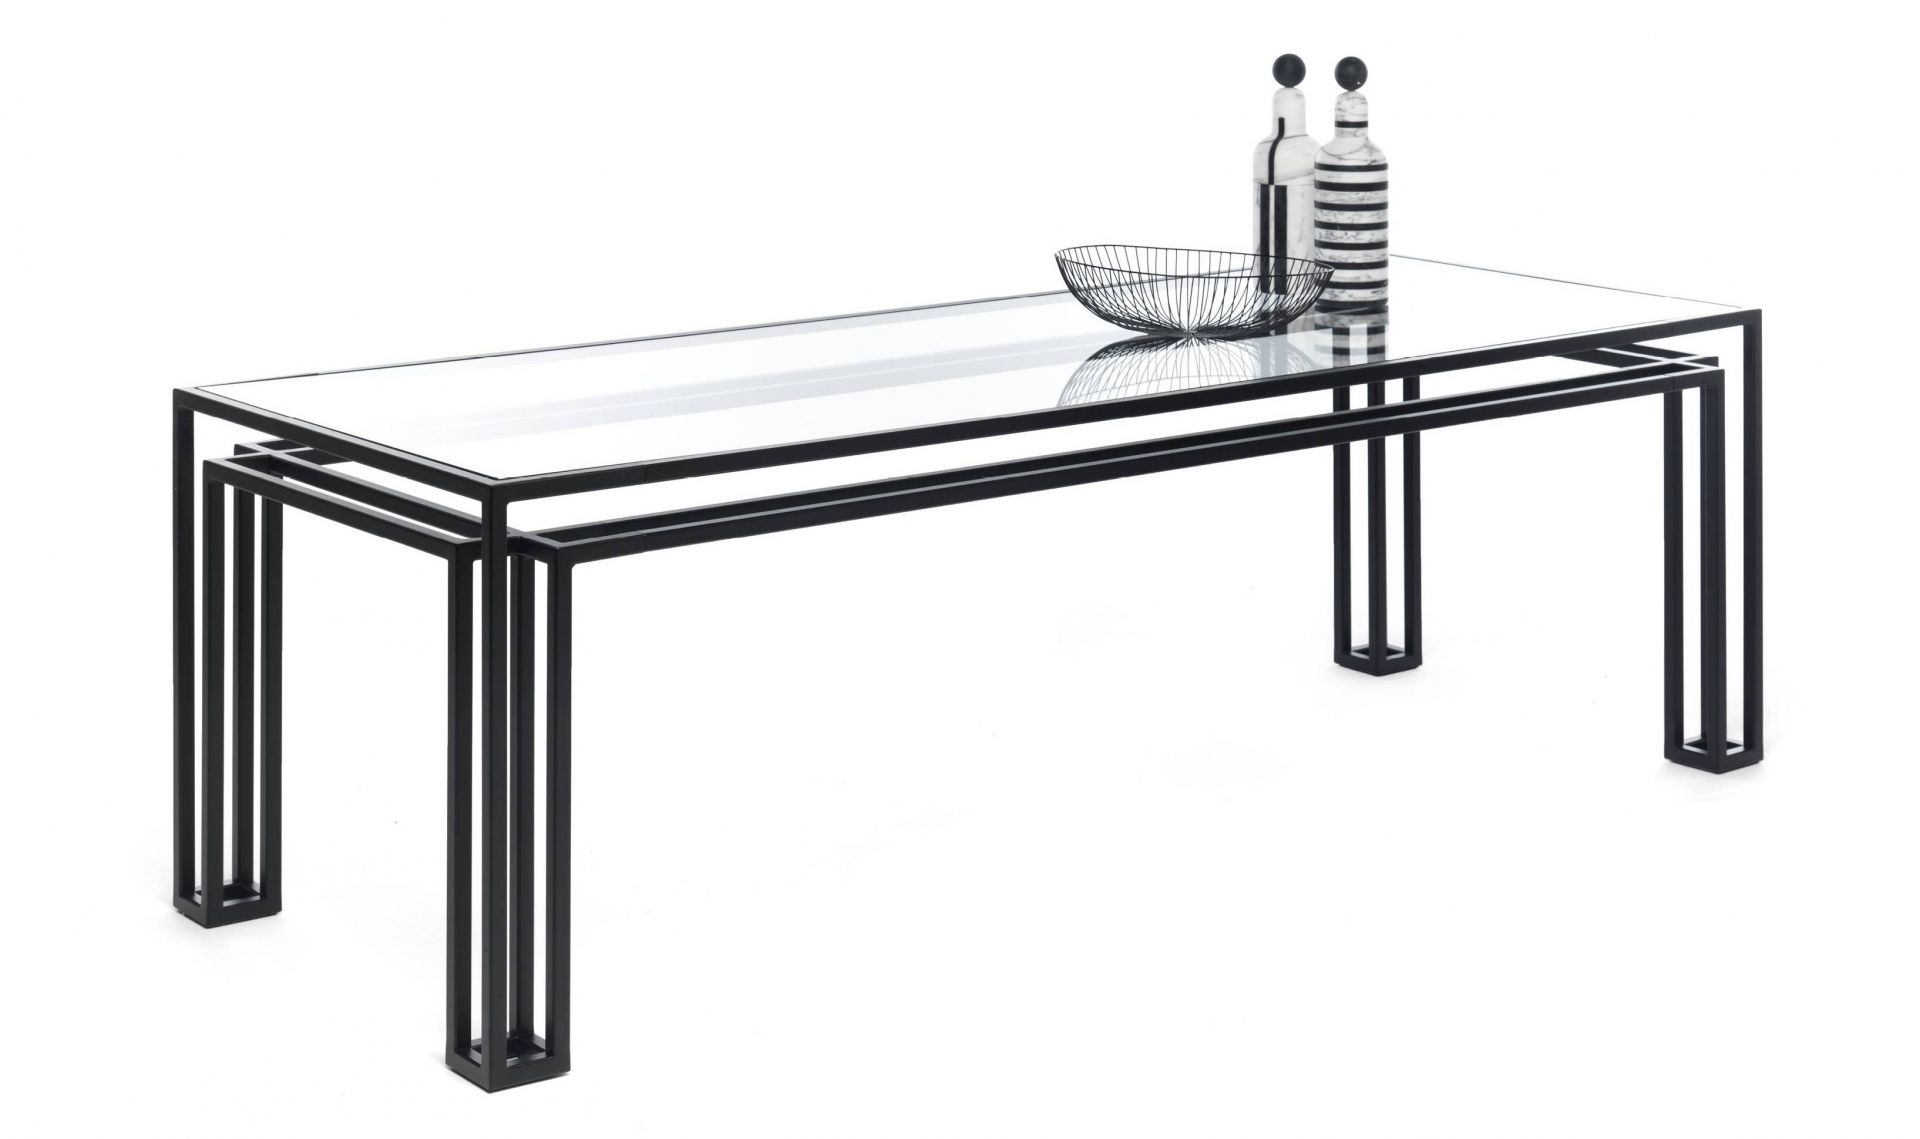 Mogg designové jídelní stoly Hotline (šířka 200 cm) - DESIGNPROPAGANDA